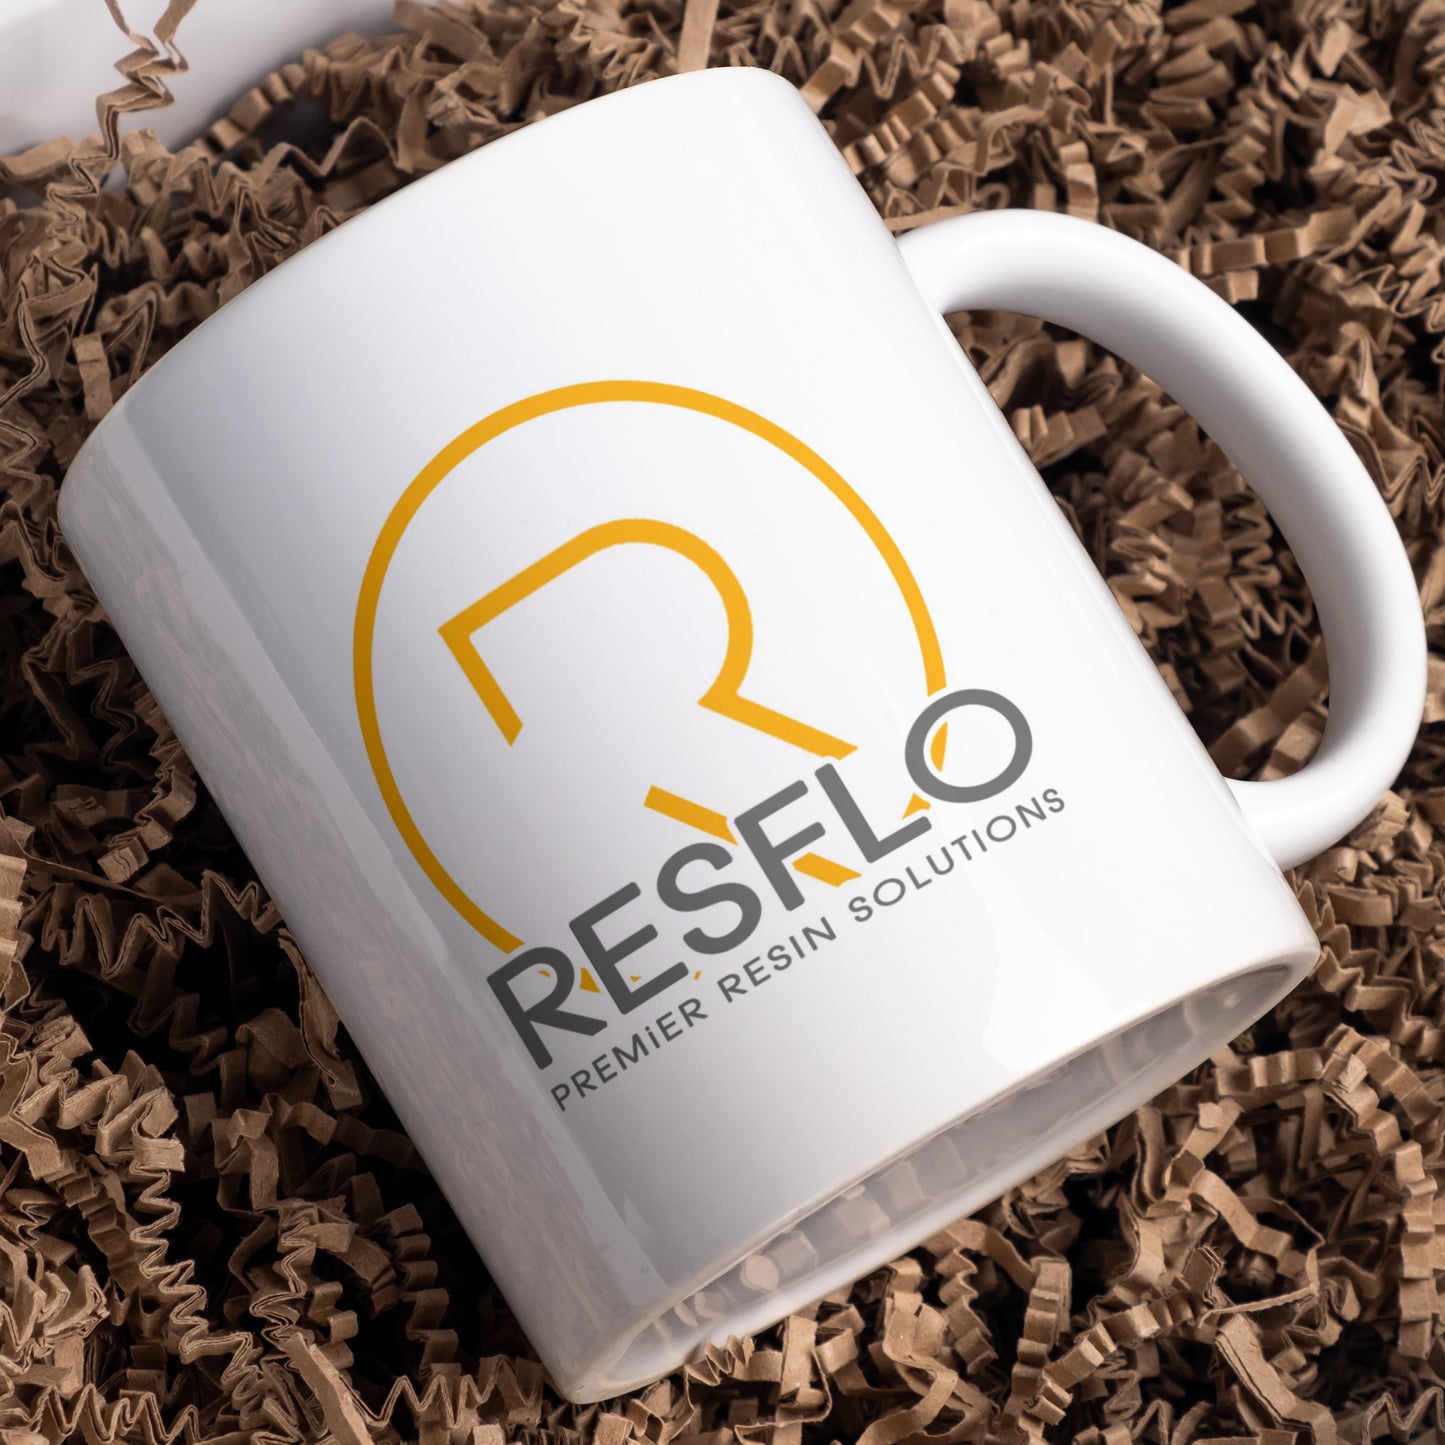 Your logo, branding or image on a mug